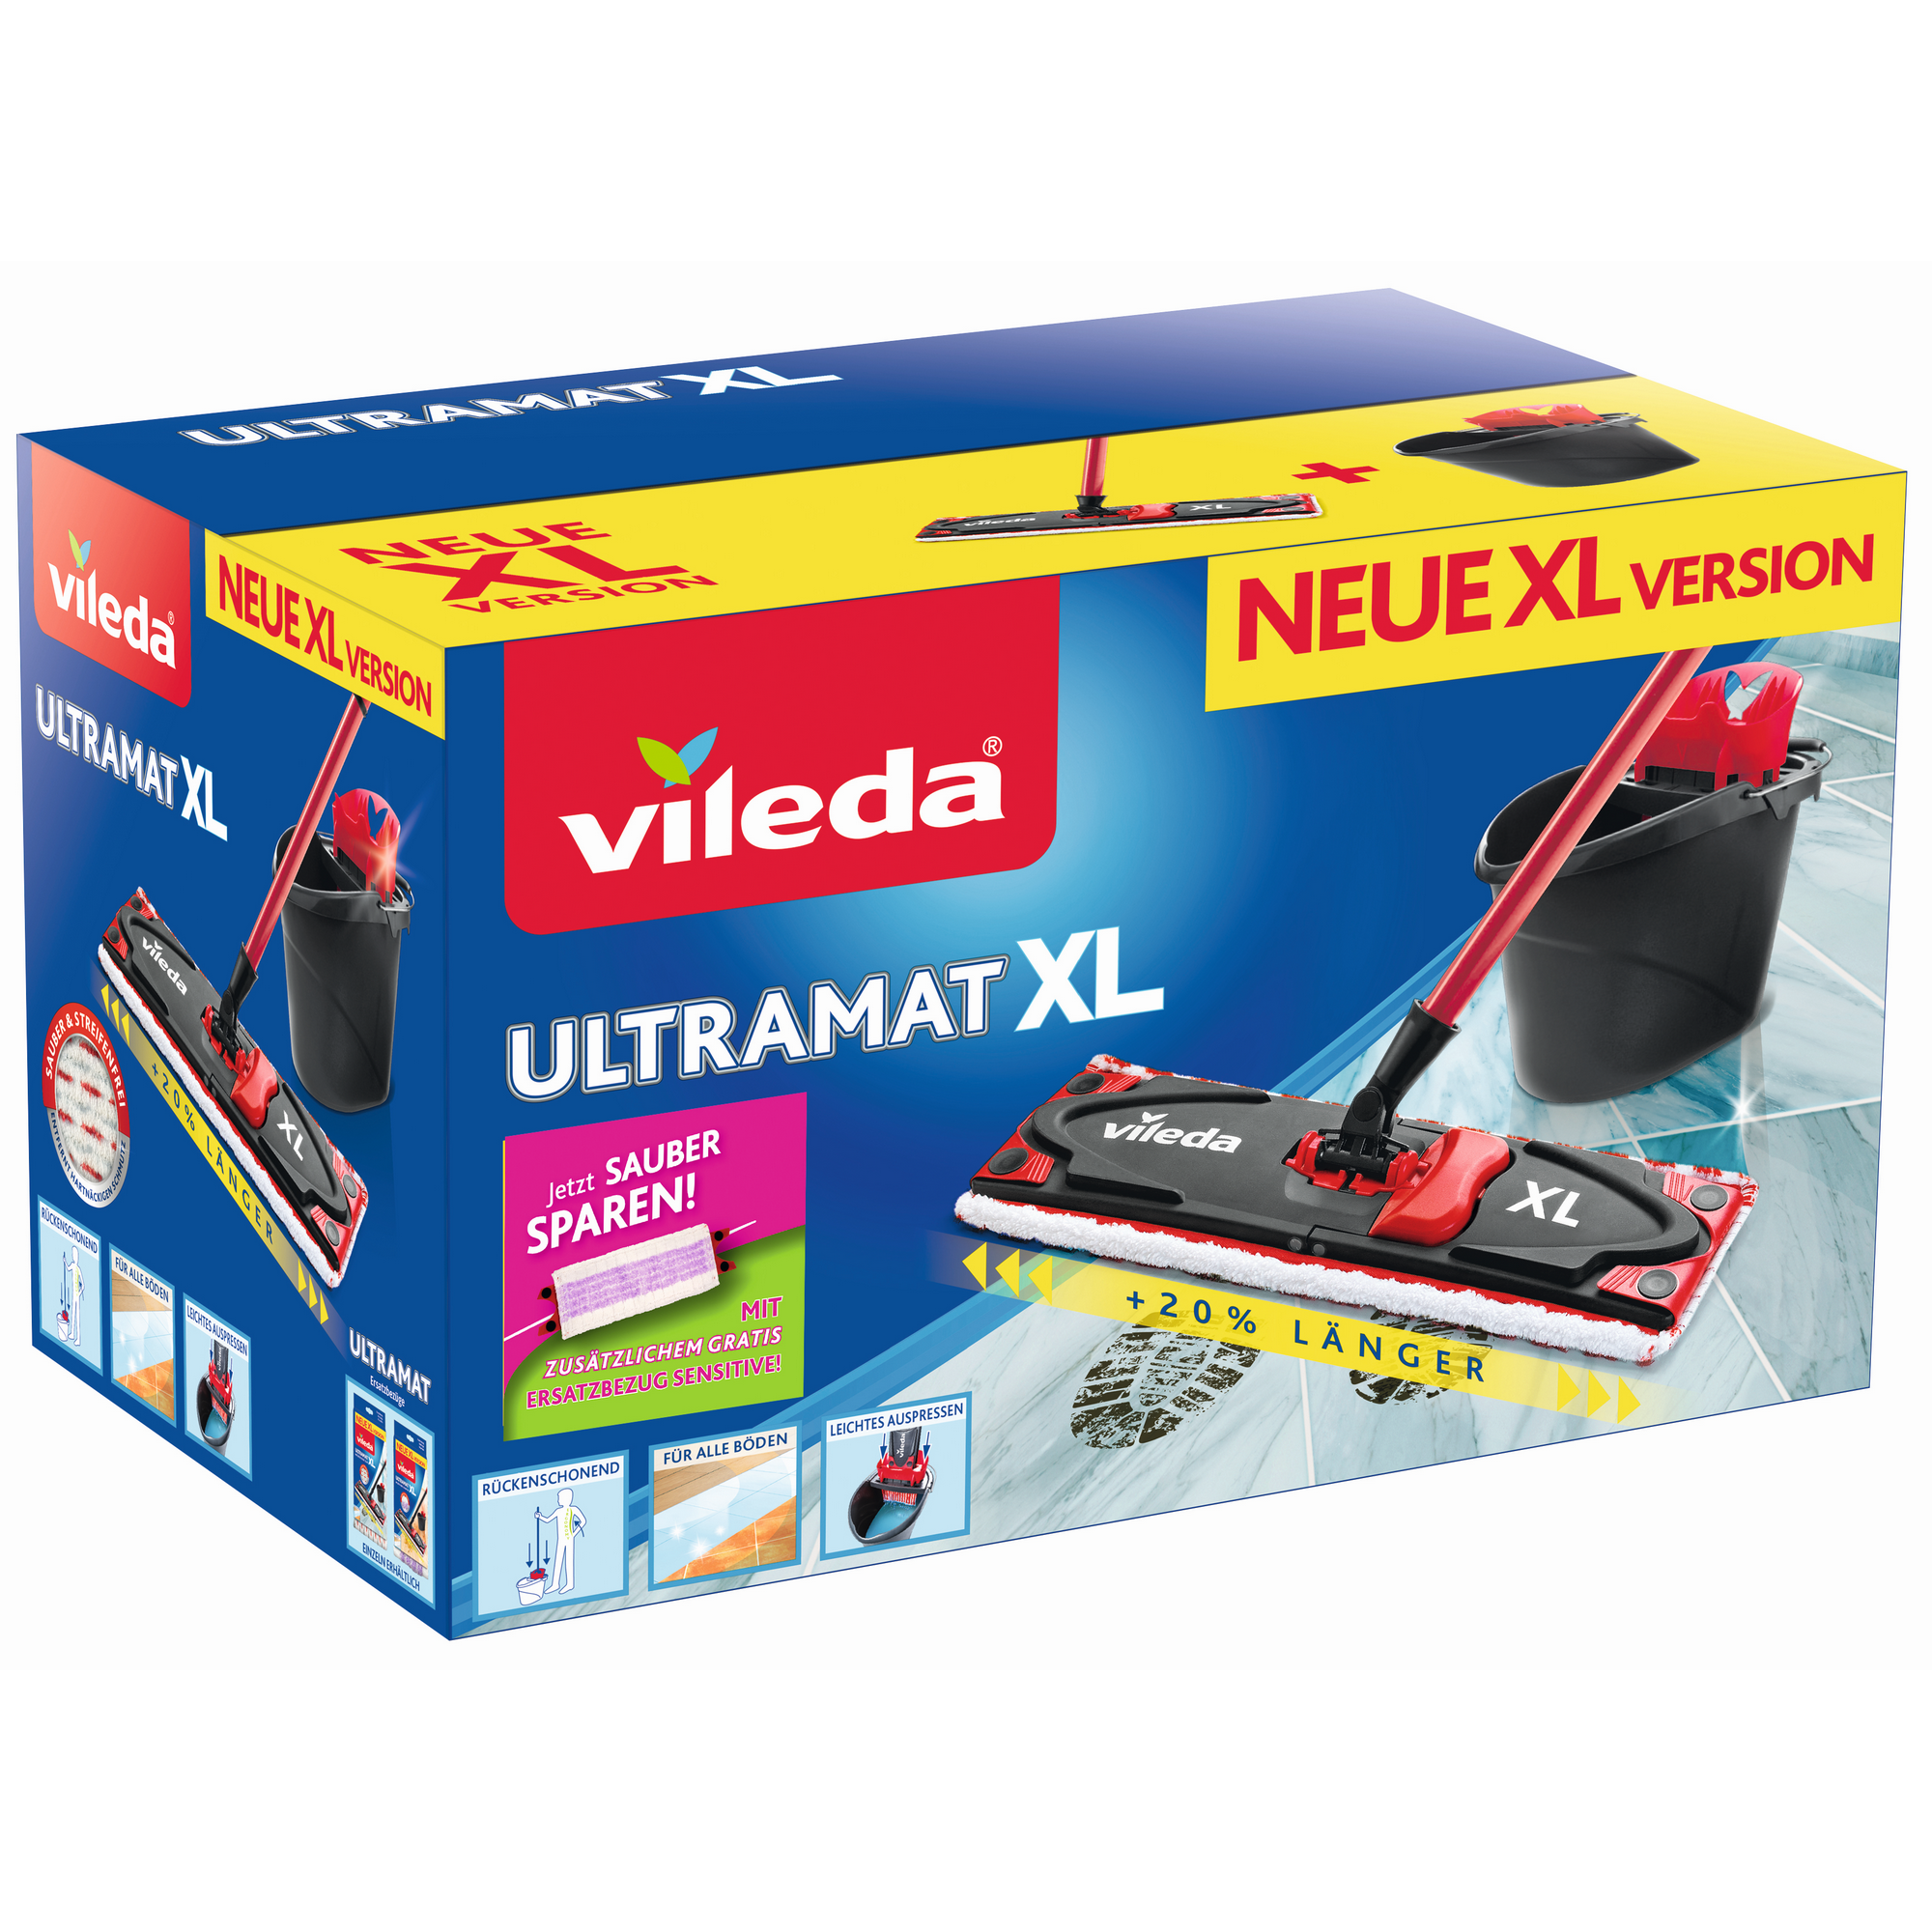 Bodenwischer-Set 'UltraMat XL' mit Ersatzbezug Sensitive + product picture